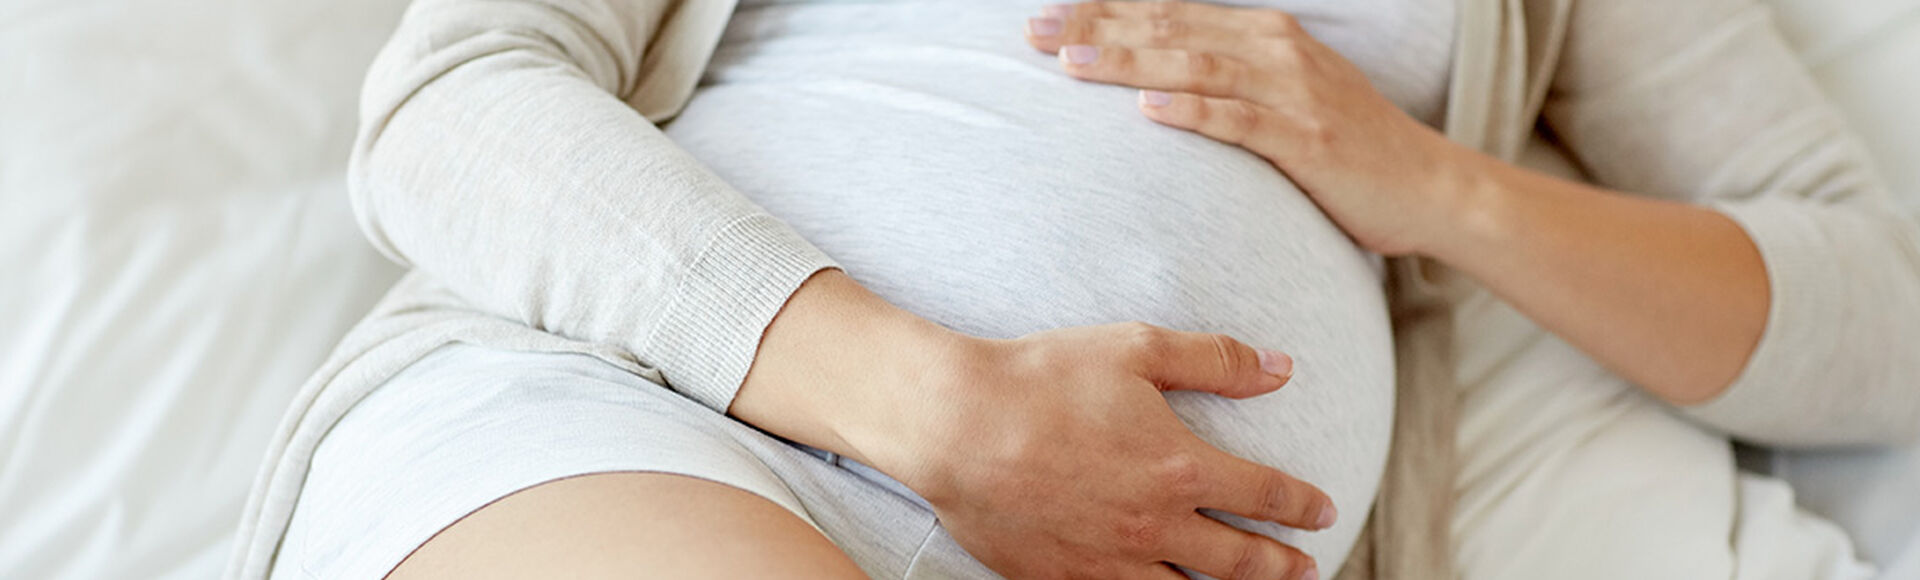 Señales que indican que tu bebé está por nacer| Más Abrazos by Huggies